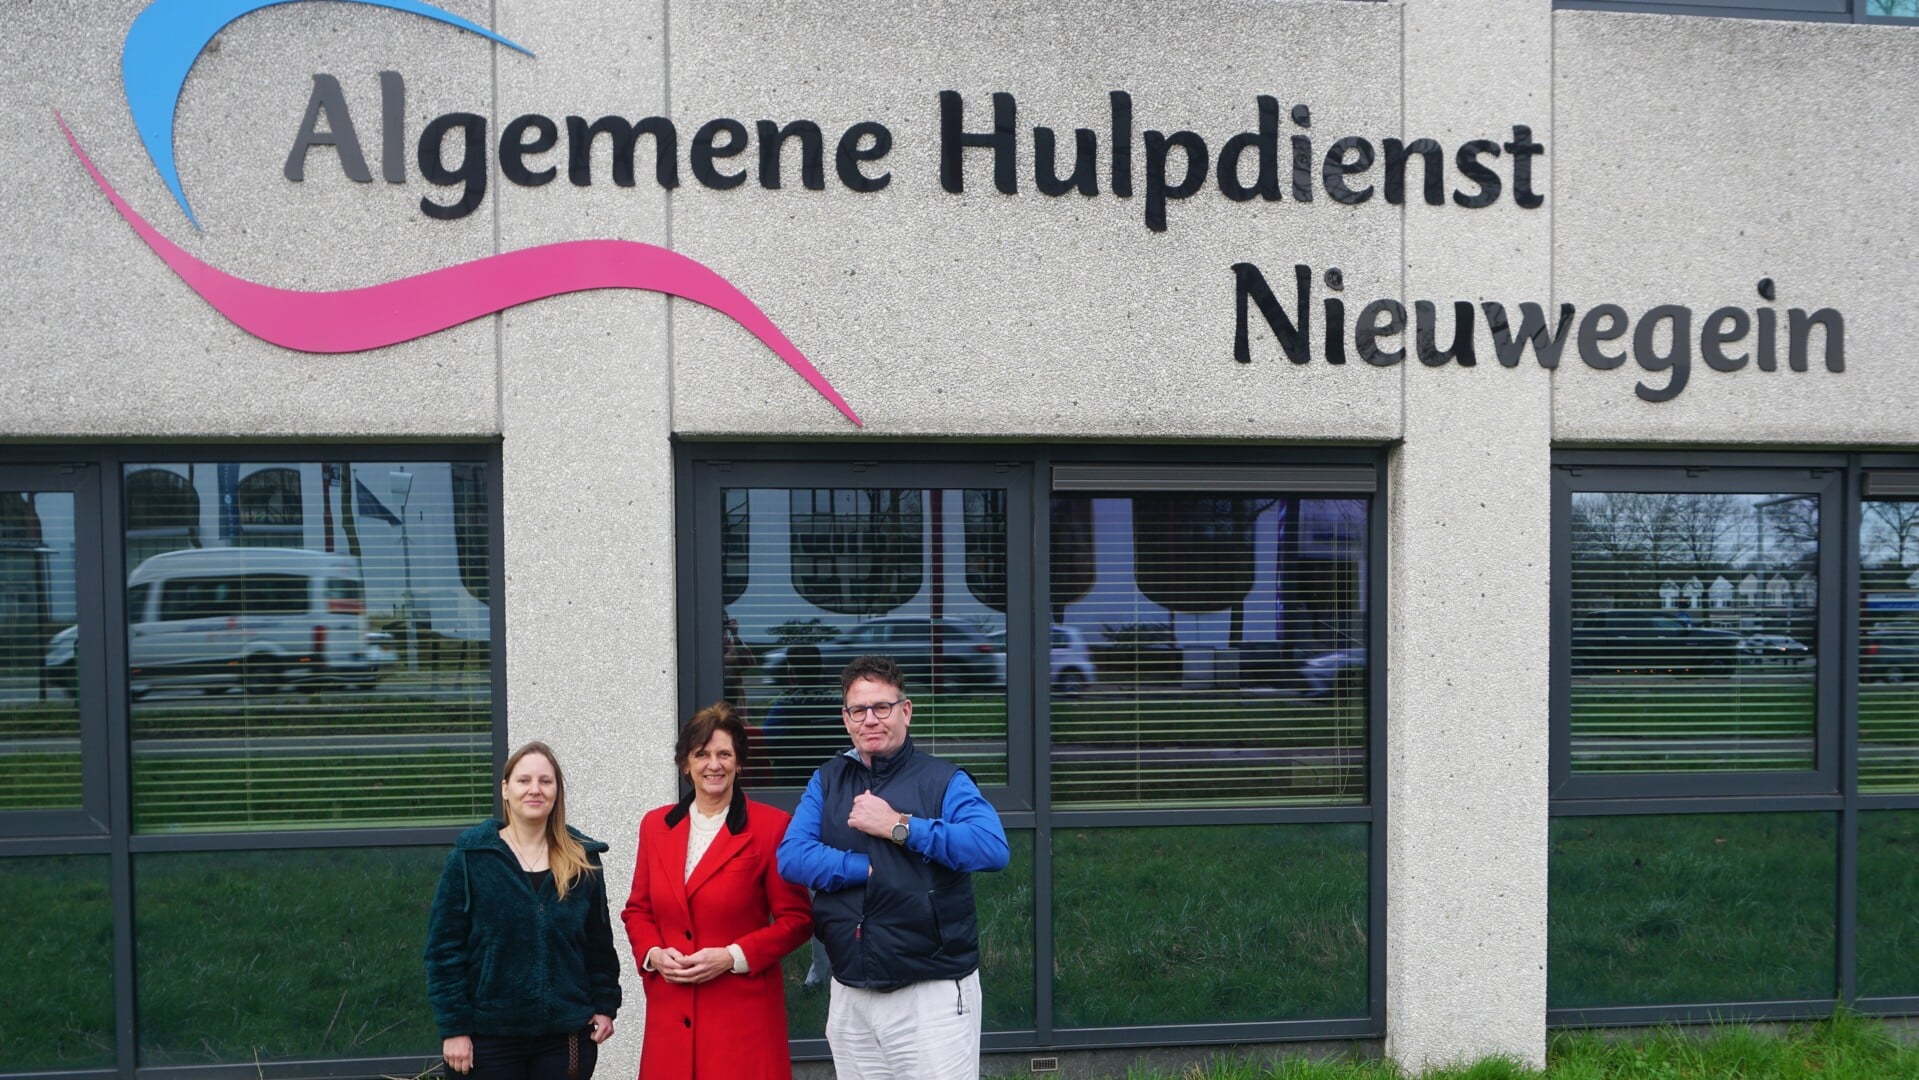 • v.l.n.r. vrijwilliger Wendy Tigges, directeur Tjitske Kuiper en vrijwiliger Paul Verdiesen voor het kantoor van de Algemene Hulpdienst Nieuwegein. 